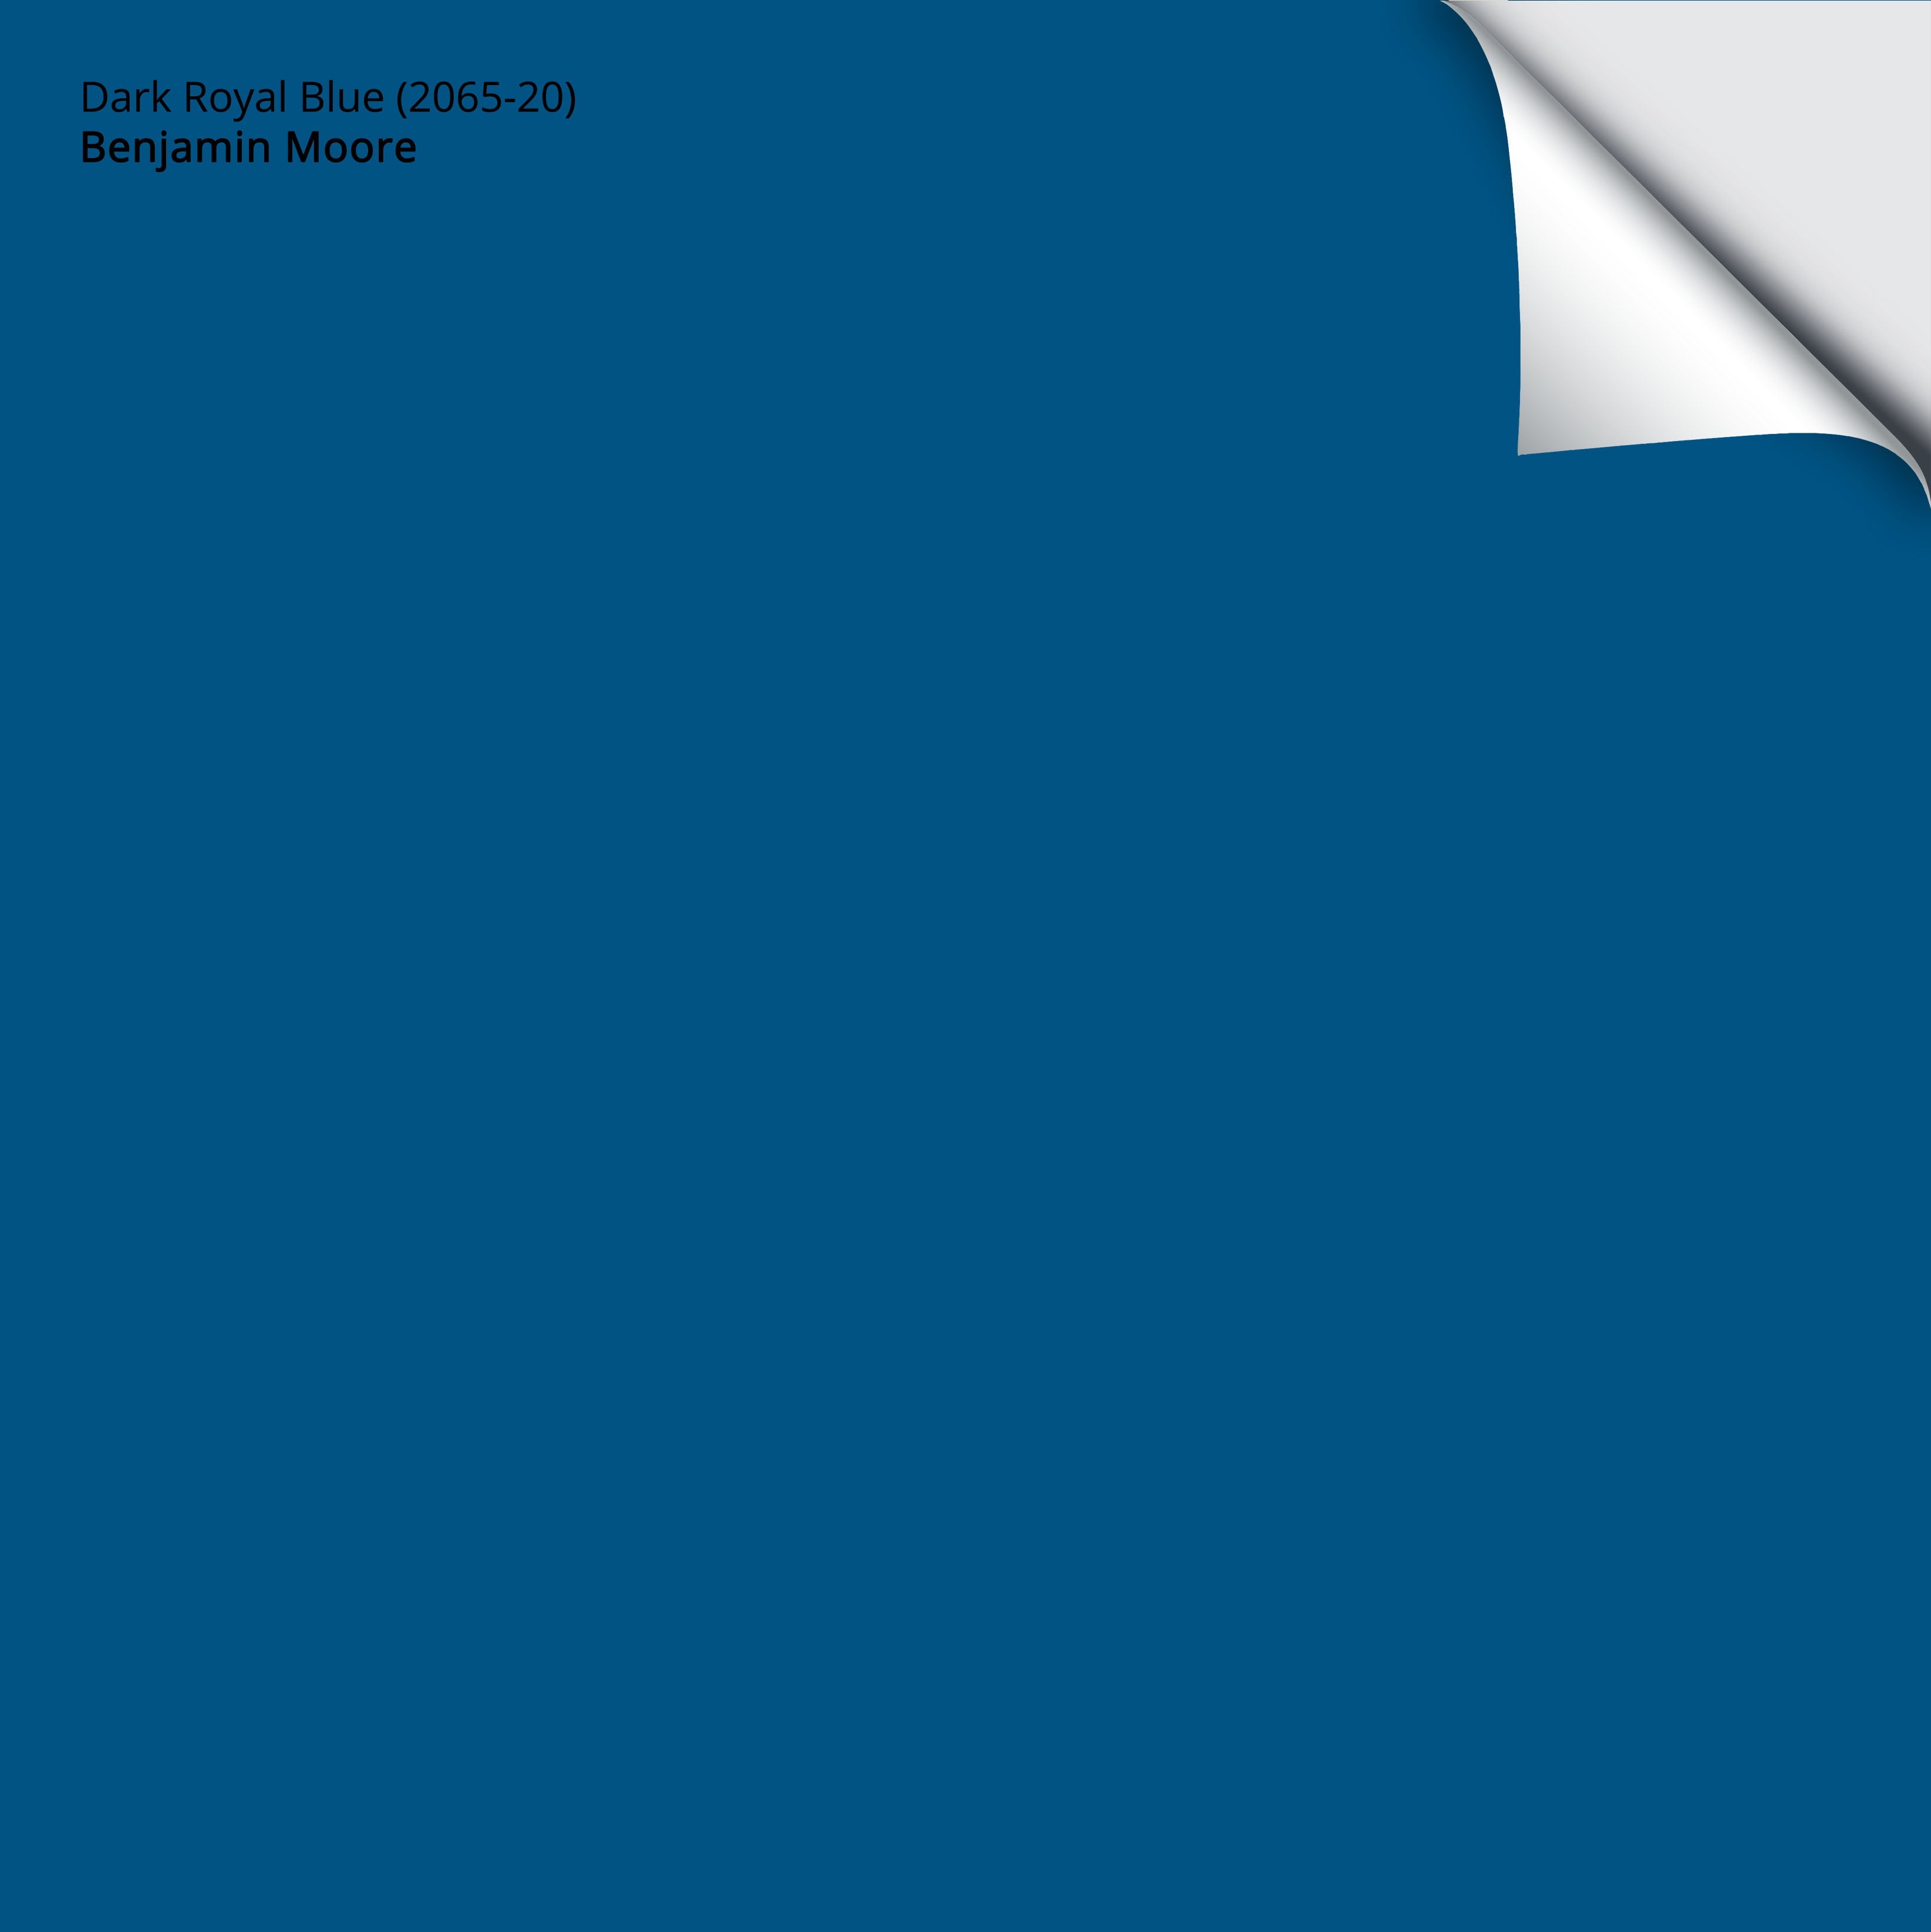 Dark Royal Blue 2065-20 by Benjamin Moore Expert SCIENTIFIC Color